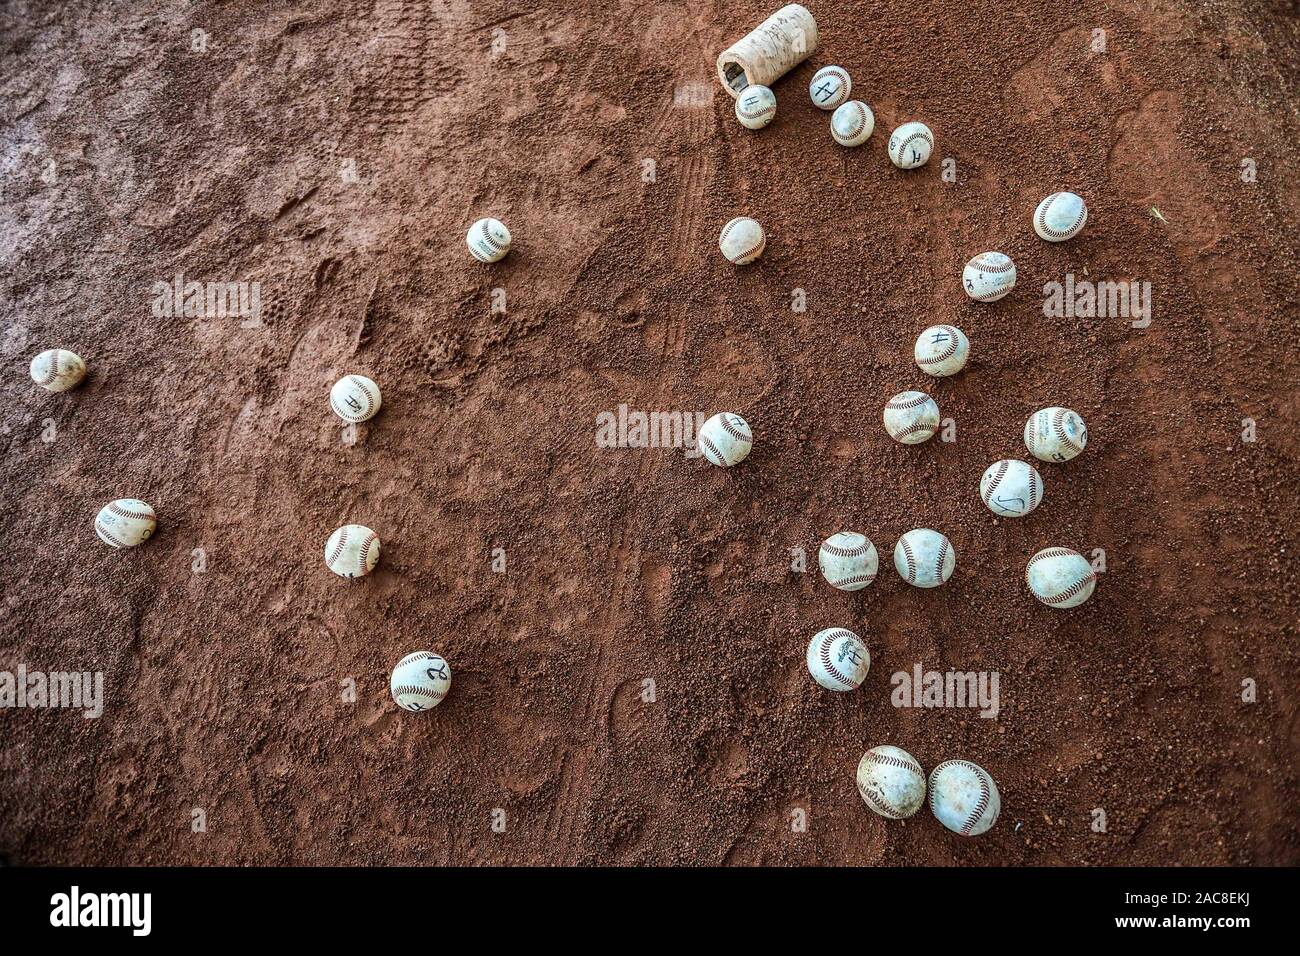 Detalles las costuras de pelota de beisbol. Acciones durante el encuentro de beisbol entre Algodoneros vs Naranjeros. Liga Mexicana del Pacifico a 1dic2019 2019 2020.    (© Photo: LuisGutierrez / NortePhoto.com) © Stock Photo